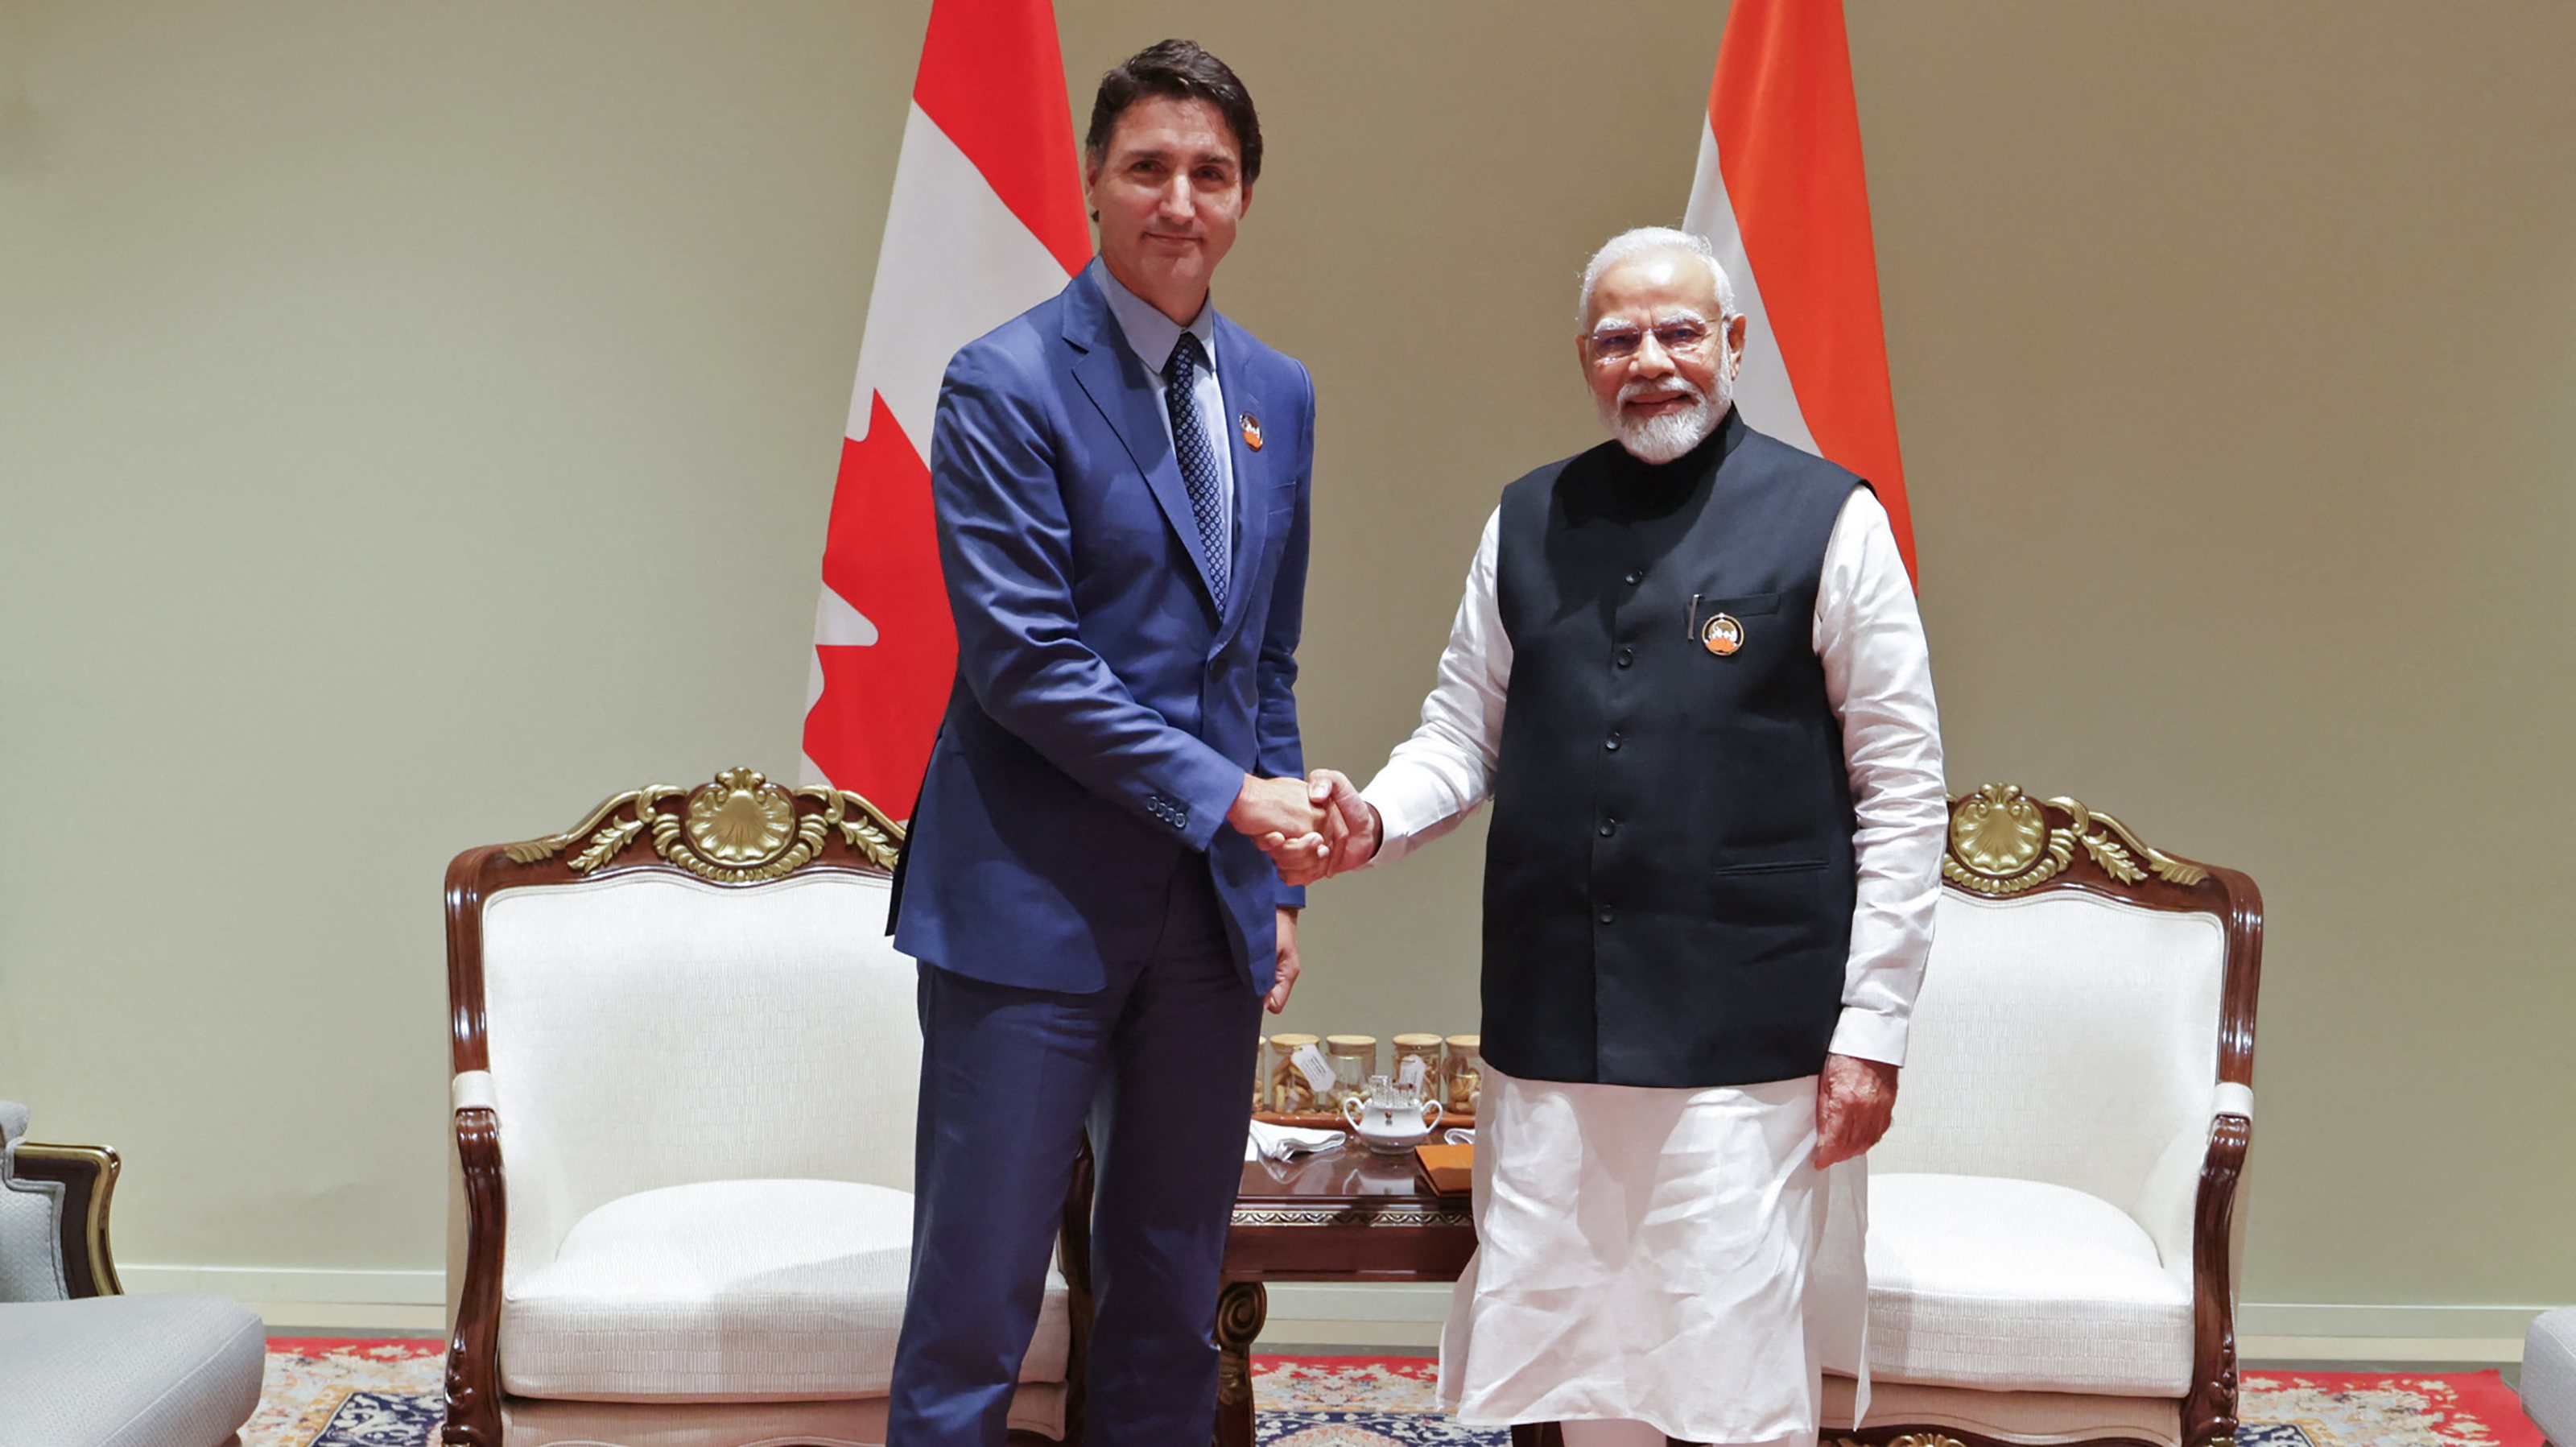 &quot;Continuo a apelar ao governo da Índia para cooperar com o Canadá e chegar à verdade neste tema”, pediu Trudeau